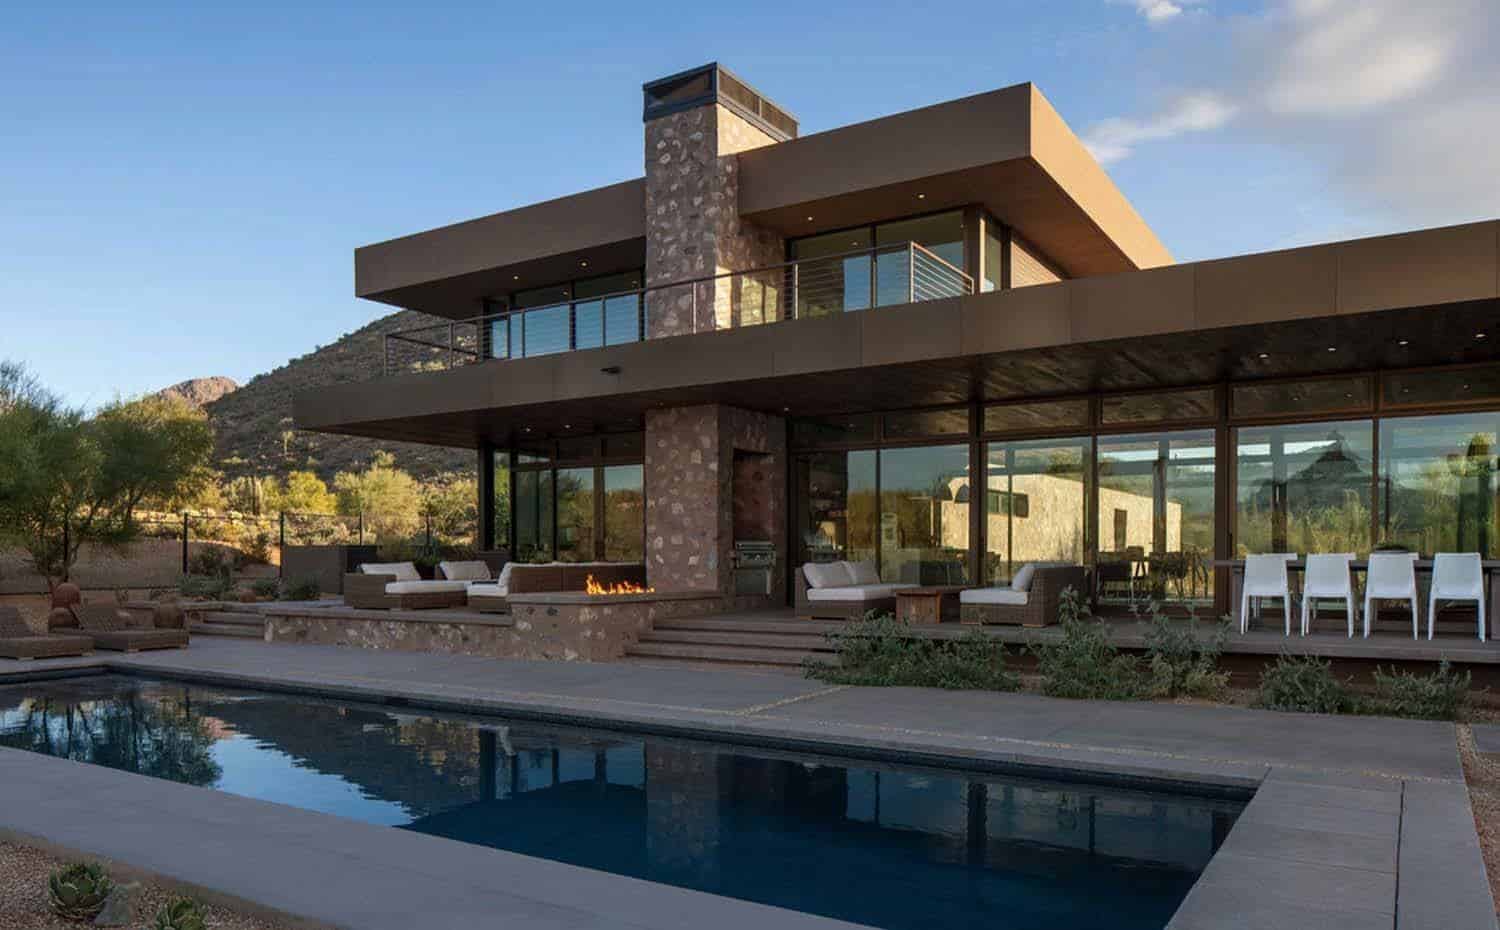 Striking modern residence piercing the deserts of Arizona